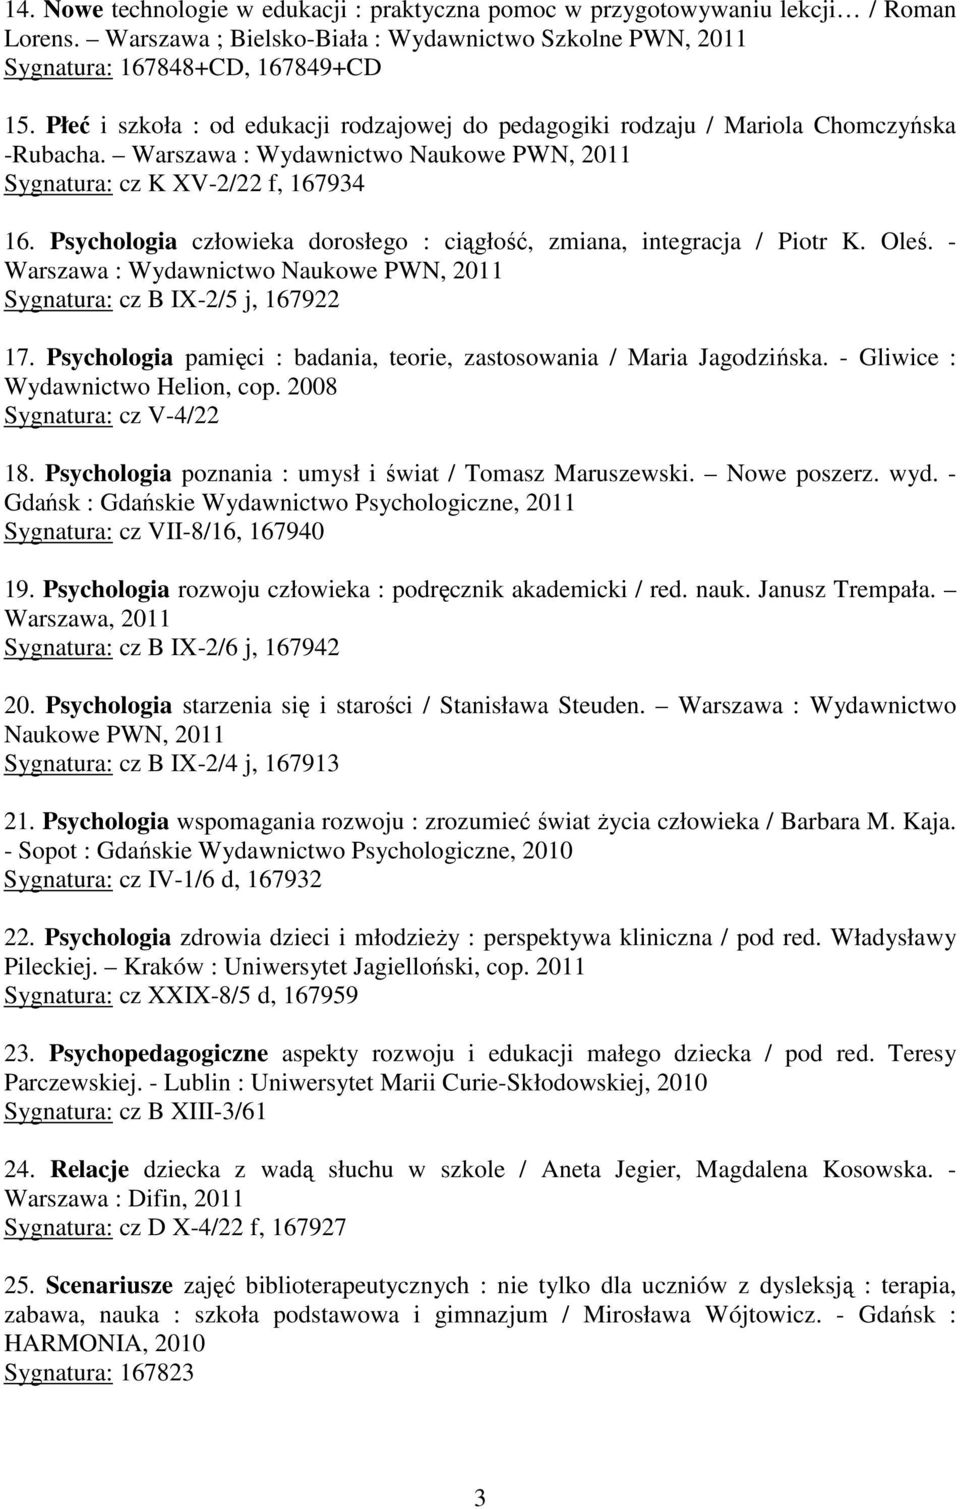 Psychologia człowieka dorosłego : ciągłość, zmiana, integracja / Piotr K. Oleś. - Warszawa : Wydawnictwo Naukowe PWN, 2011 Sygnatura: cz B IX-2/5 j, 167922 17.